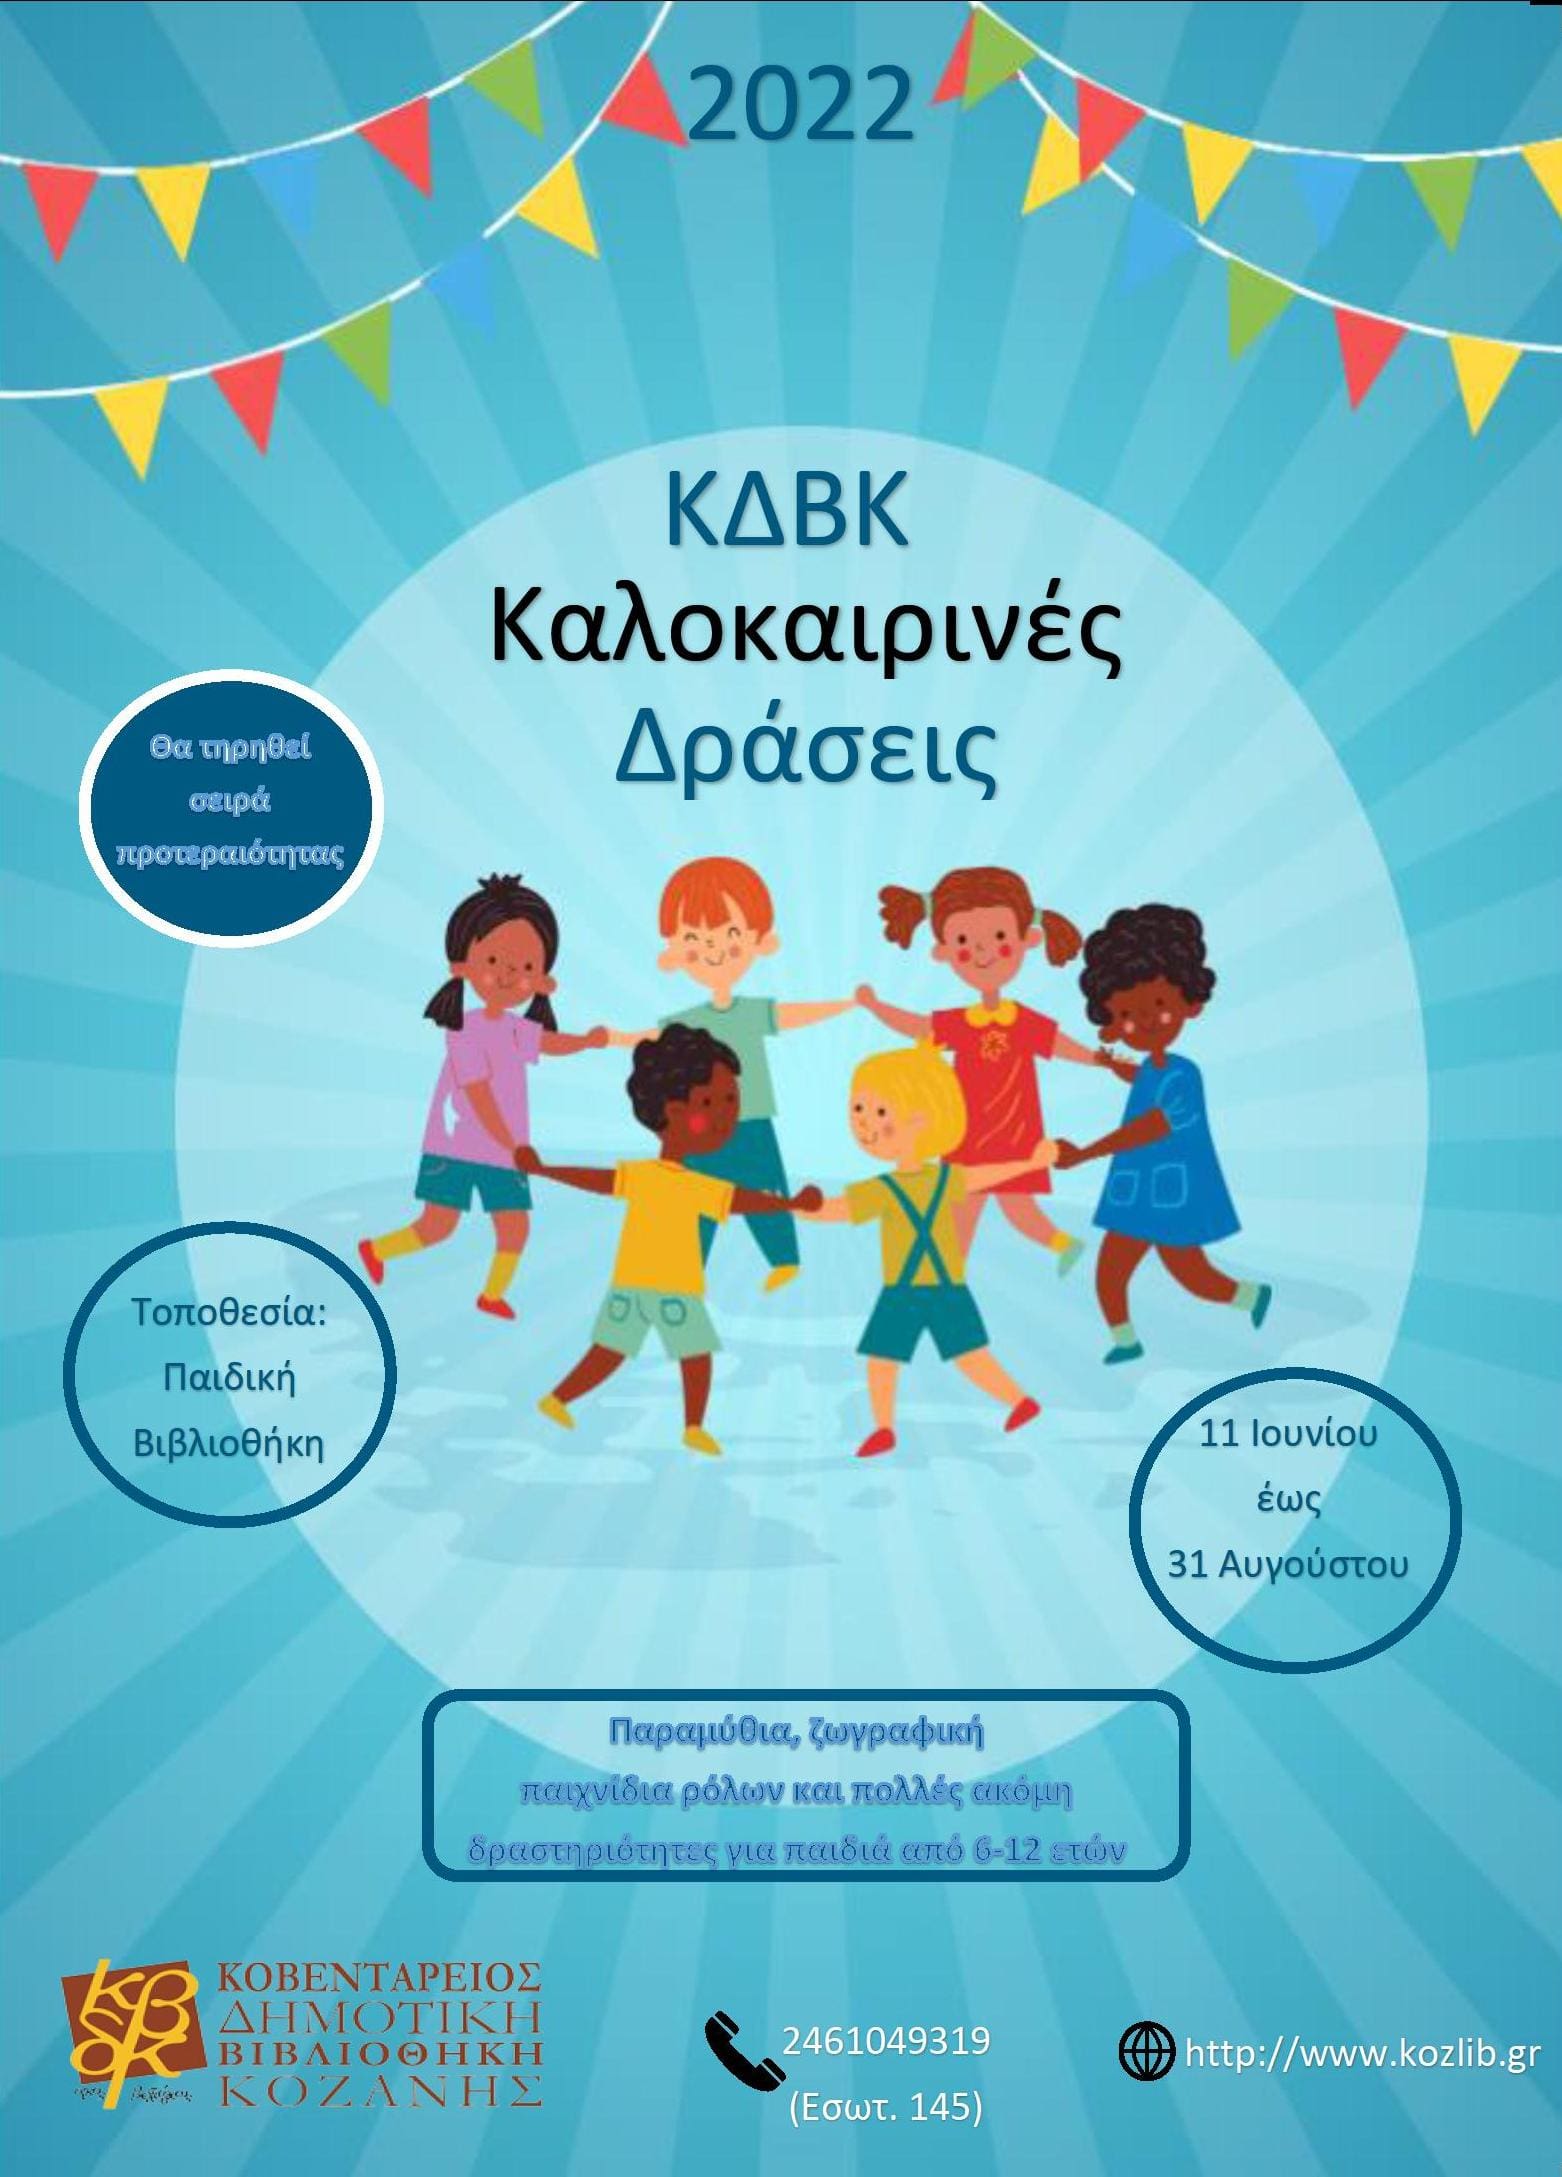 Καλοκαιρινές Δράσεις για παιδιά στην Κοβεντάρειο Δημοτική Βιβλιοθήκη Κοζάνης